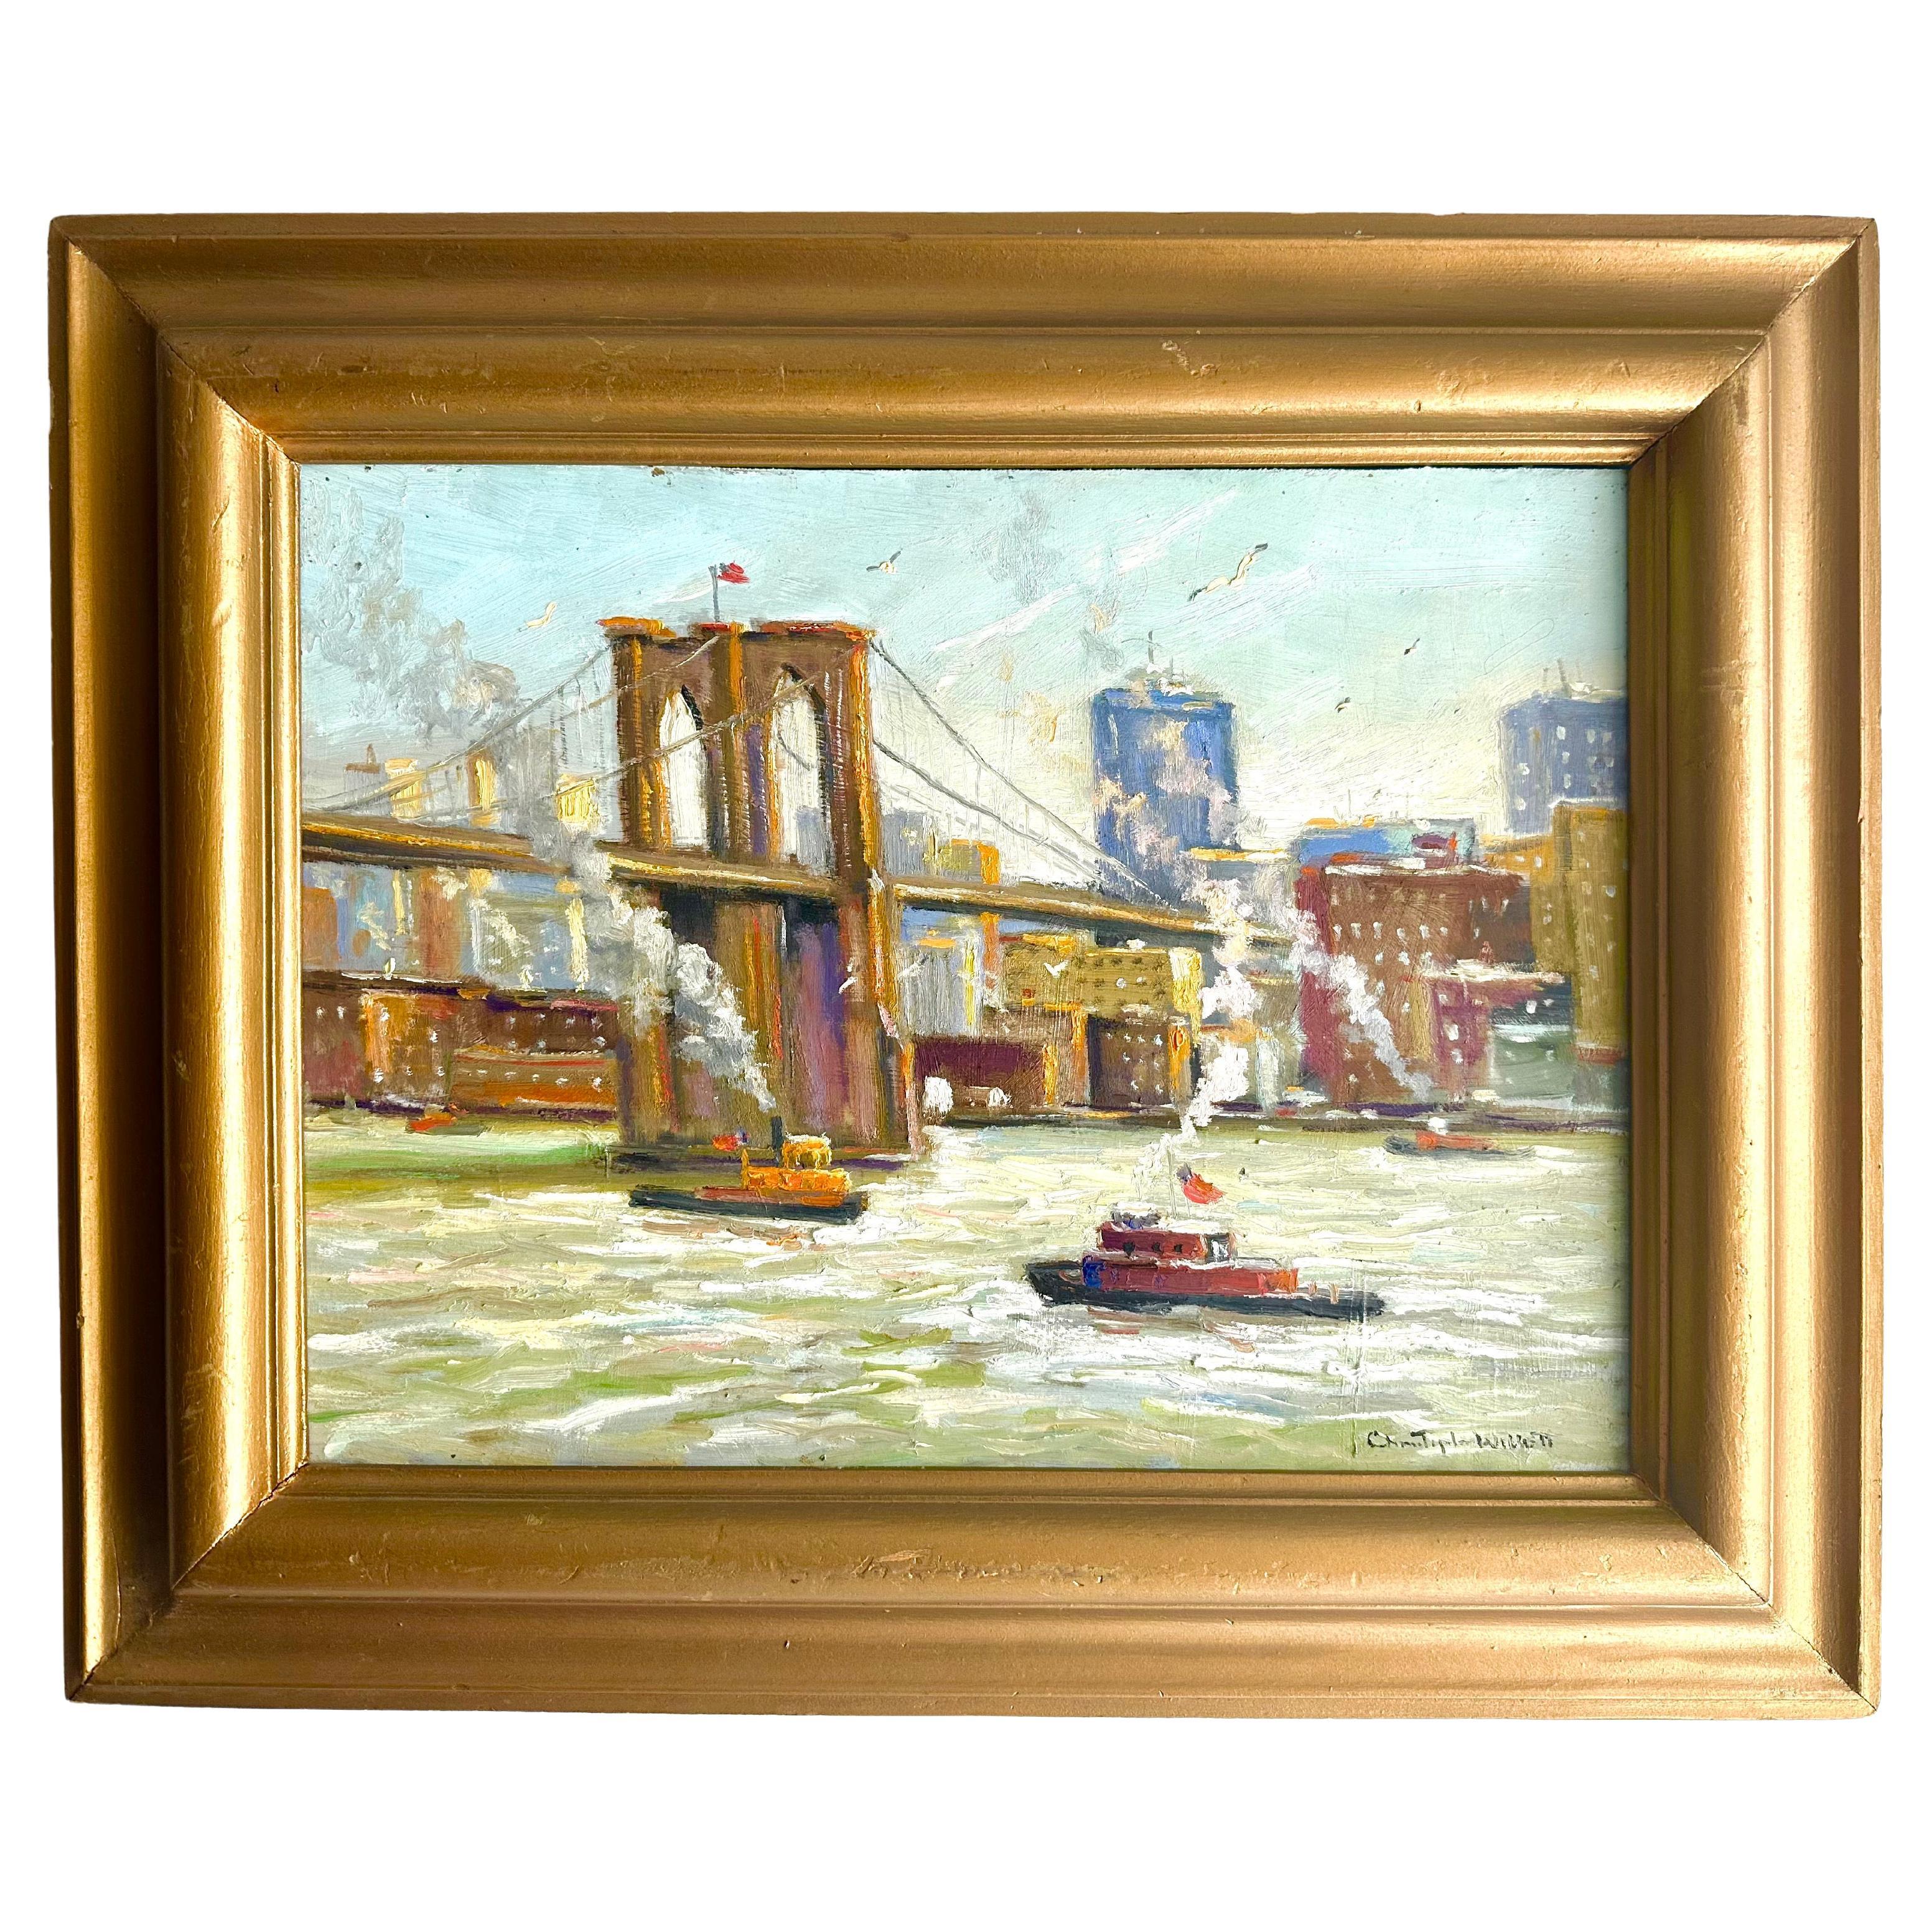 Morning on East River New York City - Peinture à l'huile impressionniste - Scène de bateau sur un pont